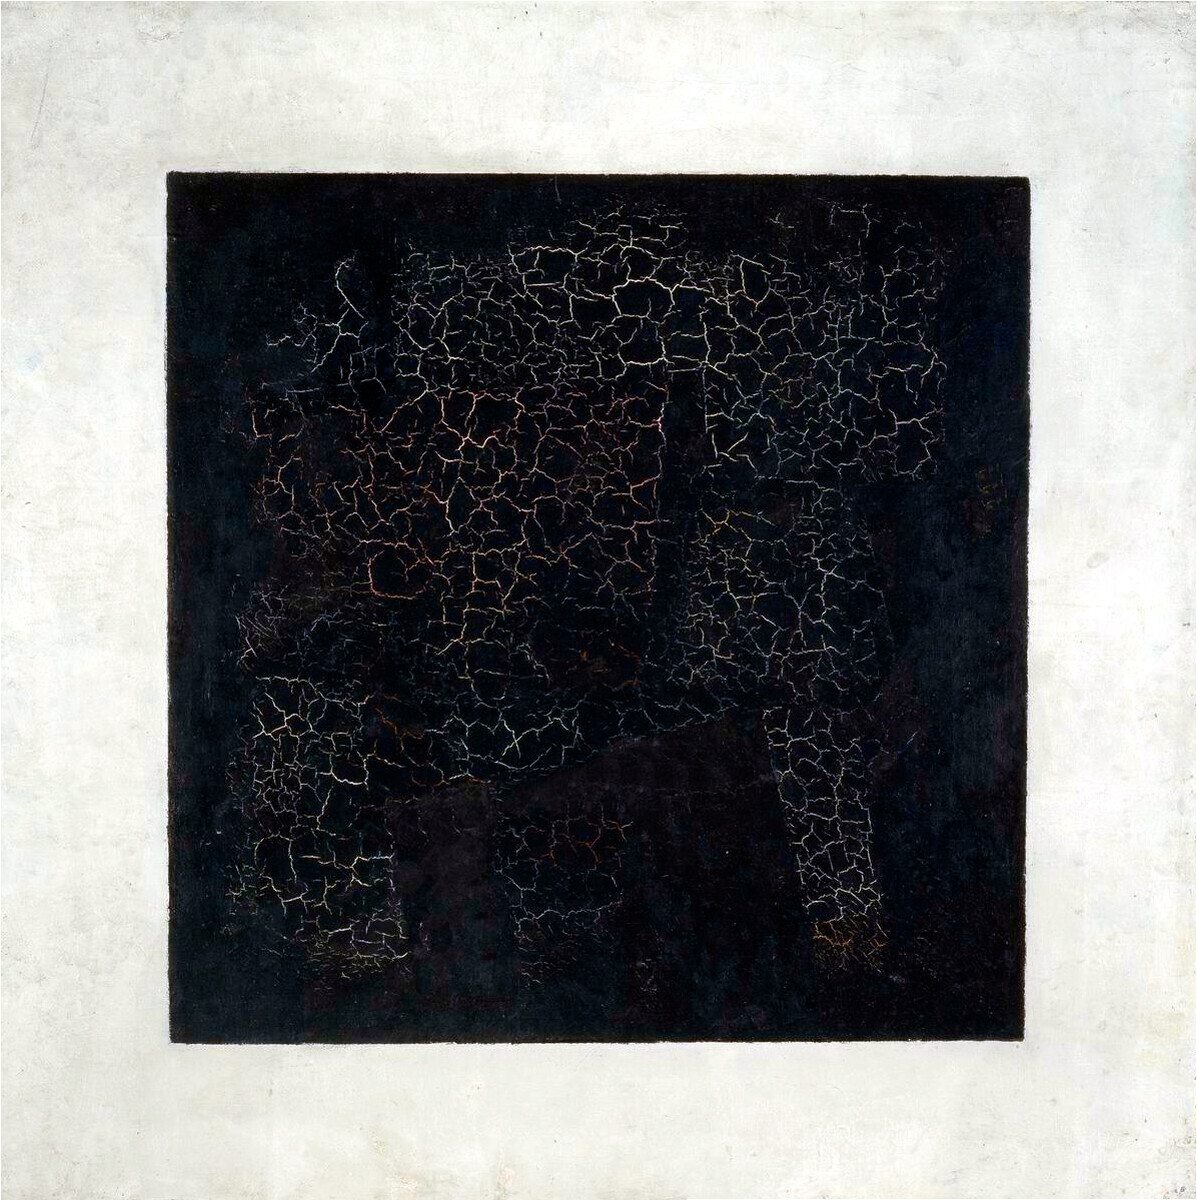 Kazimir Malevich, “Il quadrato nero”, 1915